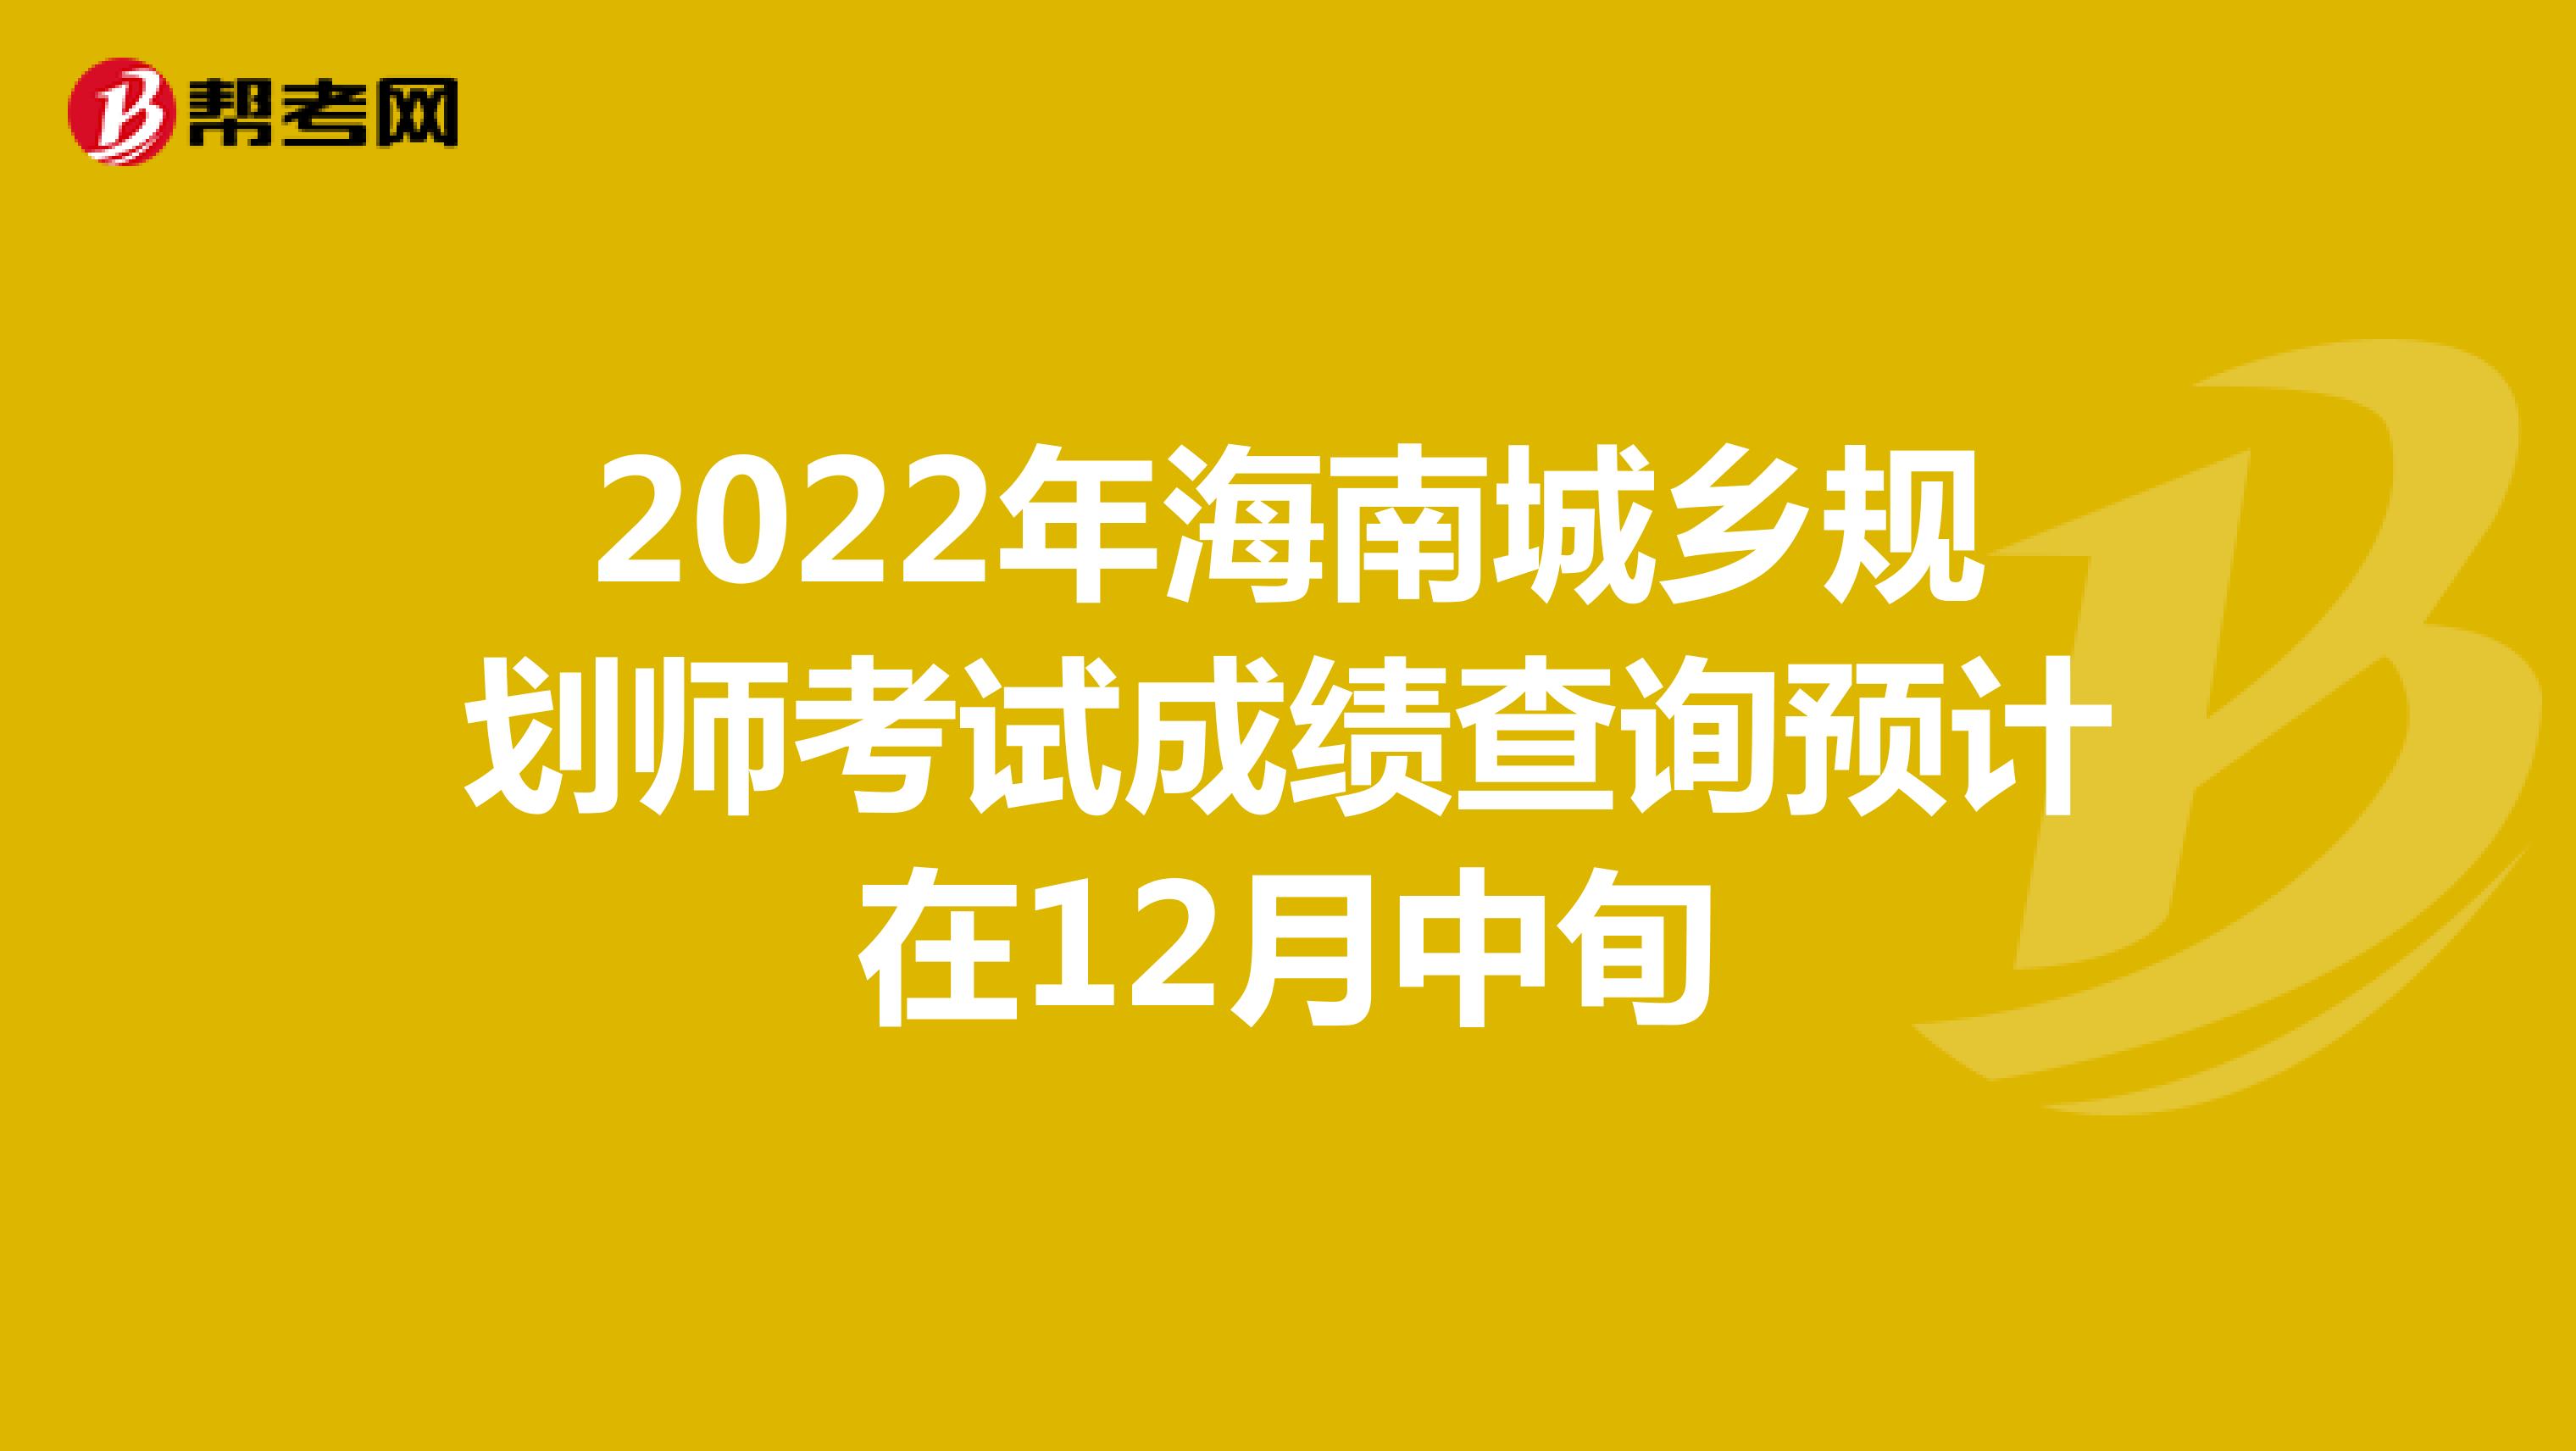 2022年海南城乡规划师考试成绩查询预计在12月中旬